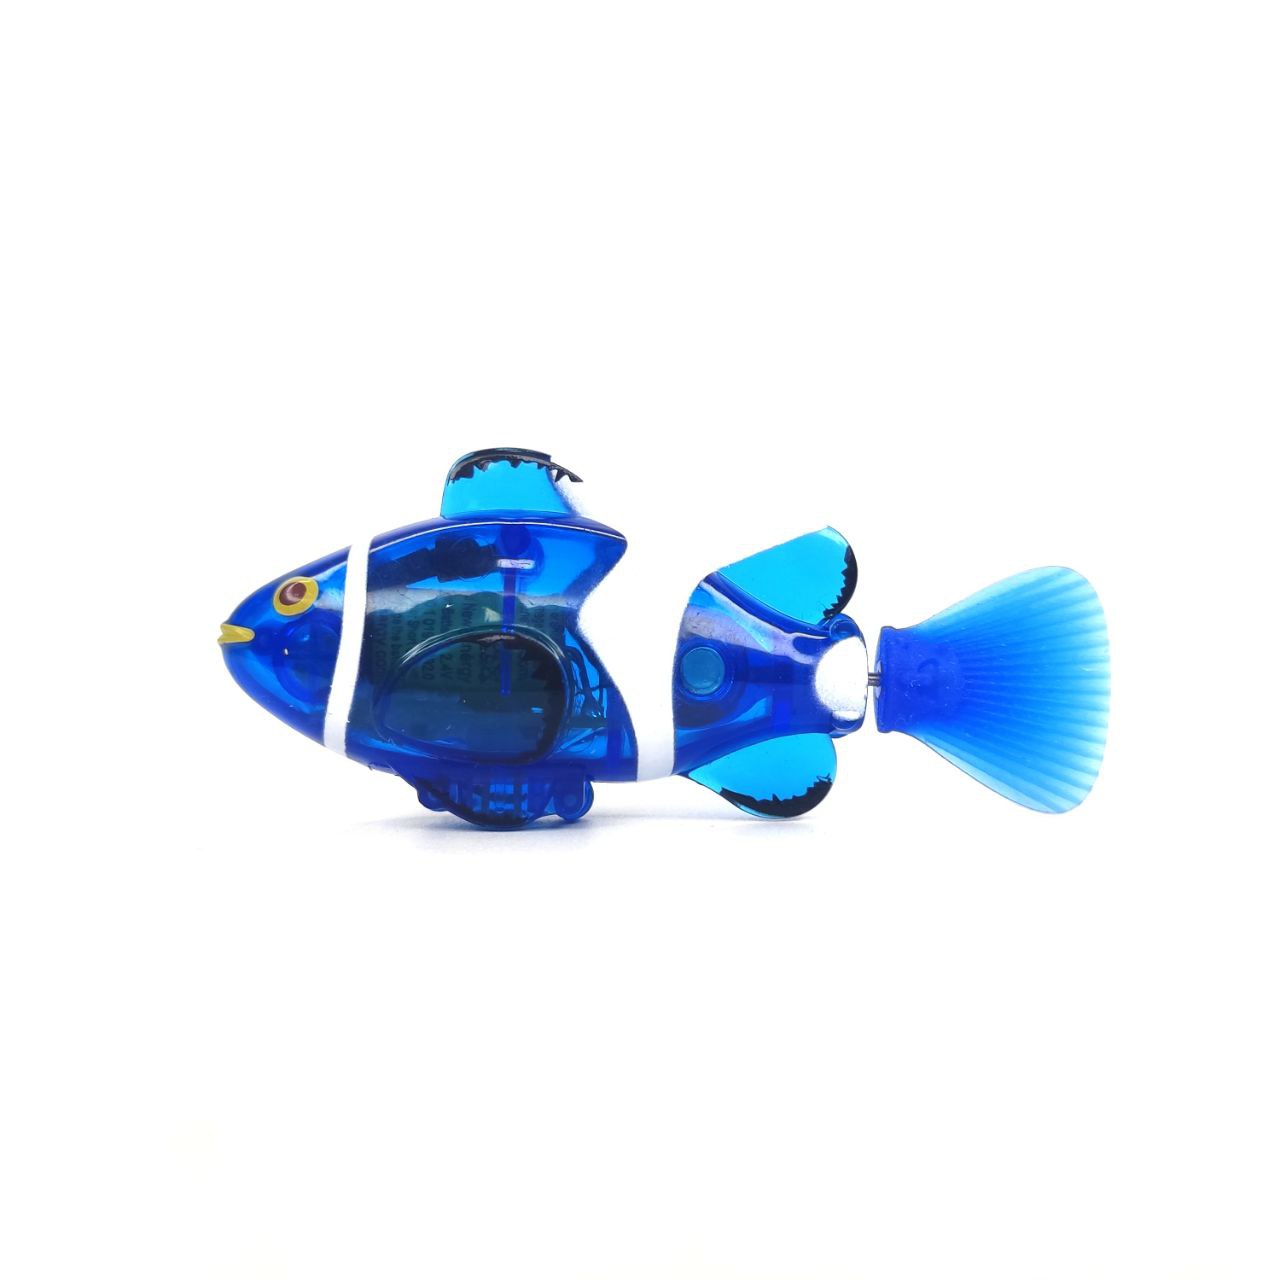 Радиоуправляемая рыбка Create Toys Clown Fish 27Mhz 3316-BLUE пустышка elodie бамбук силиконовая sunrise blue 0 6 мес 2 шт в упаковке